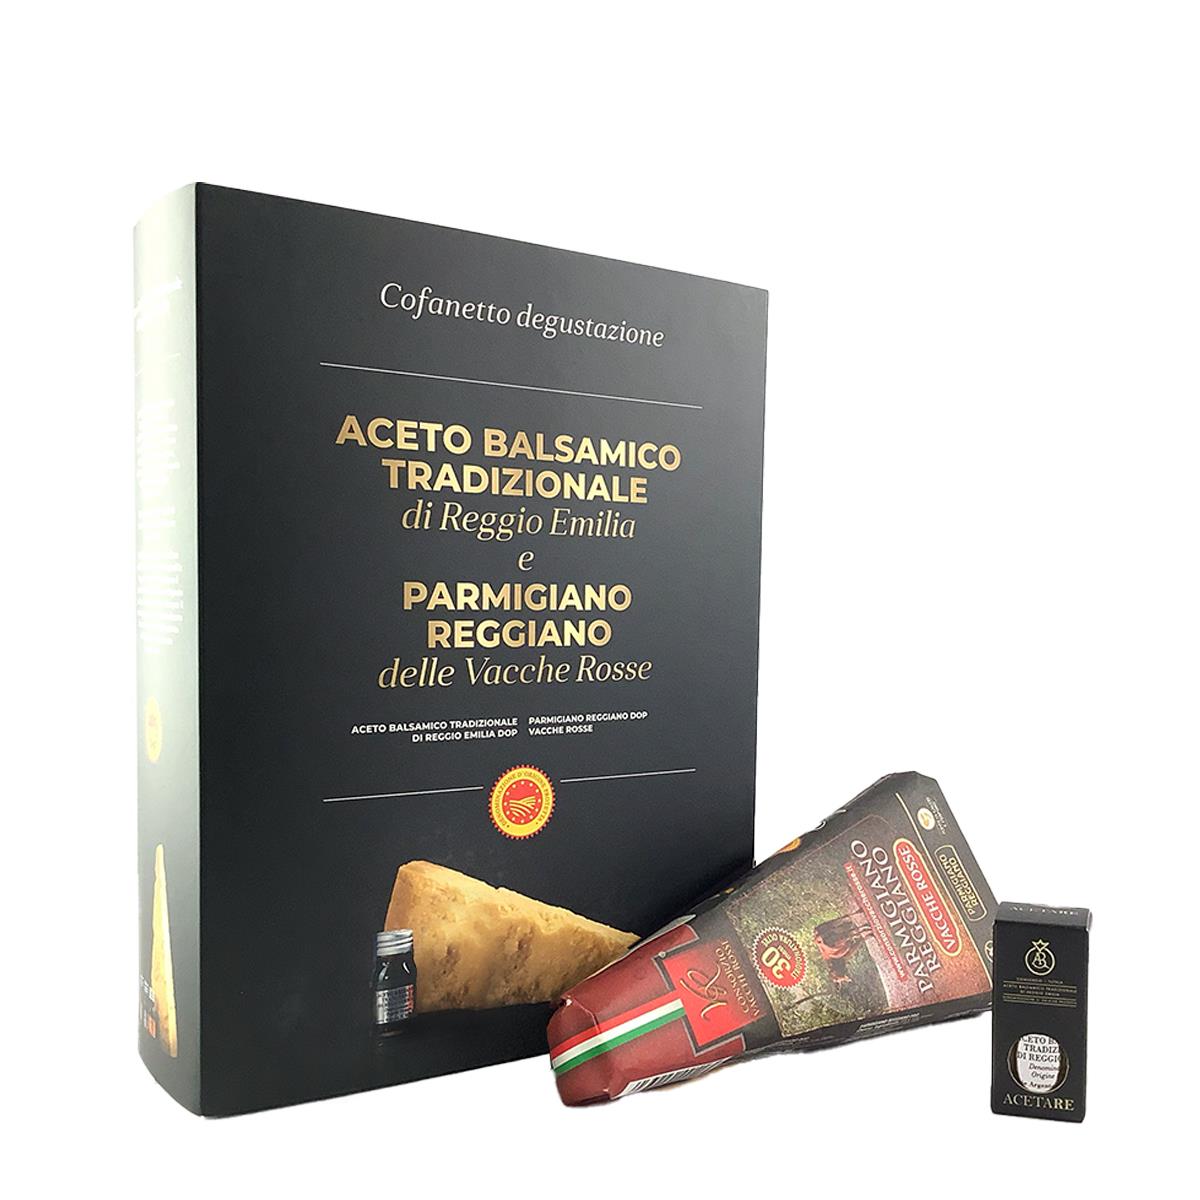 Caja de Parmigiano Reggiano Vacche Rosse 30 Meses y Vinagre Balsámico Reggio Emilia Calidad Plata